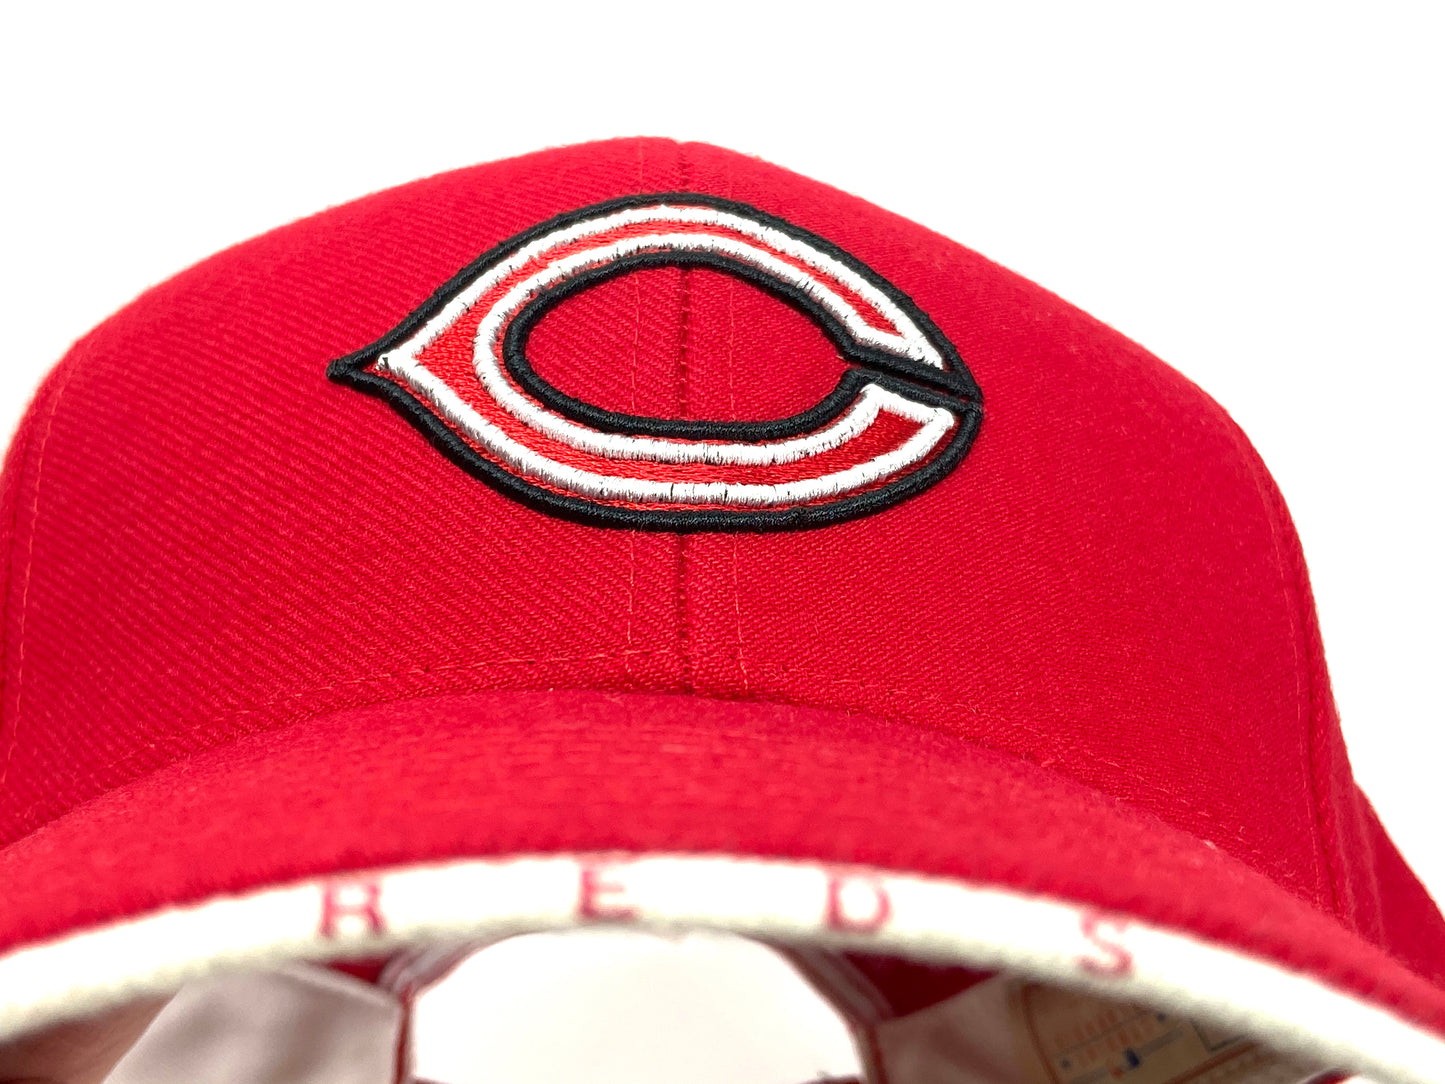 Cincinnati Reds Vintage MLB Team Color 15% Wool Logo Cap By Twins Enterprise